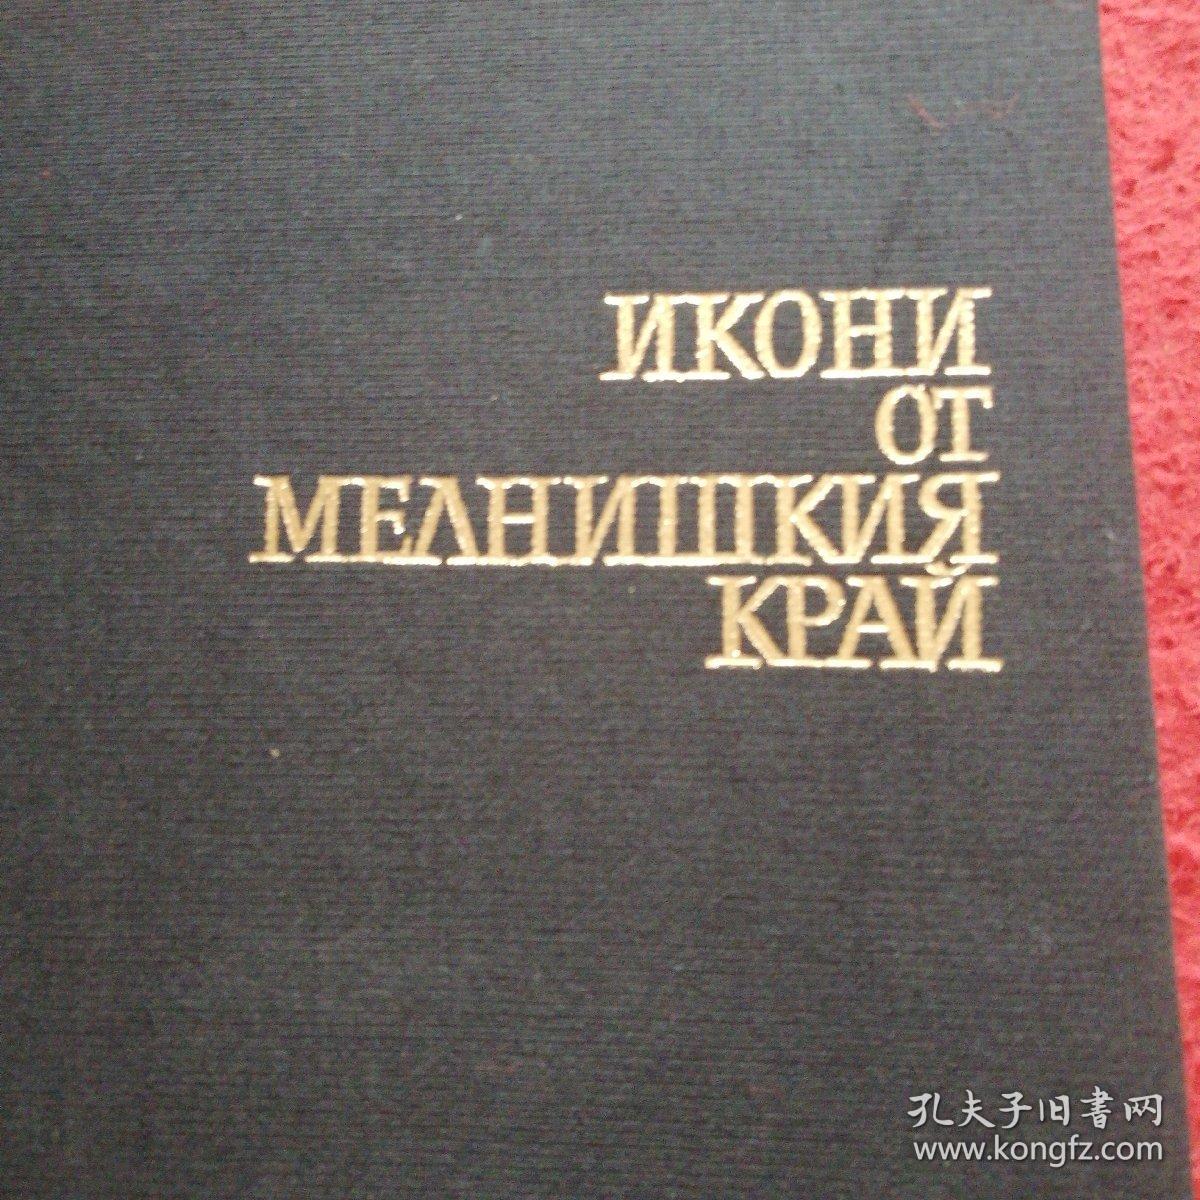 梅尔尼什基边疆区的图标 俄早期…圣像画（签名赠言画册）不详见图